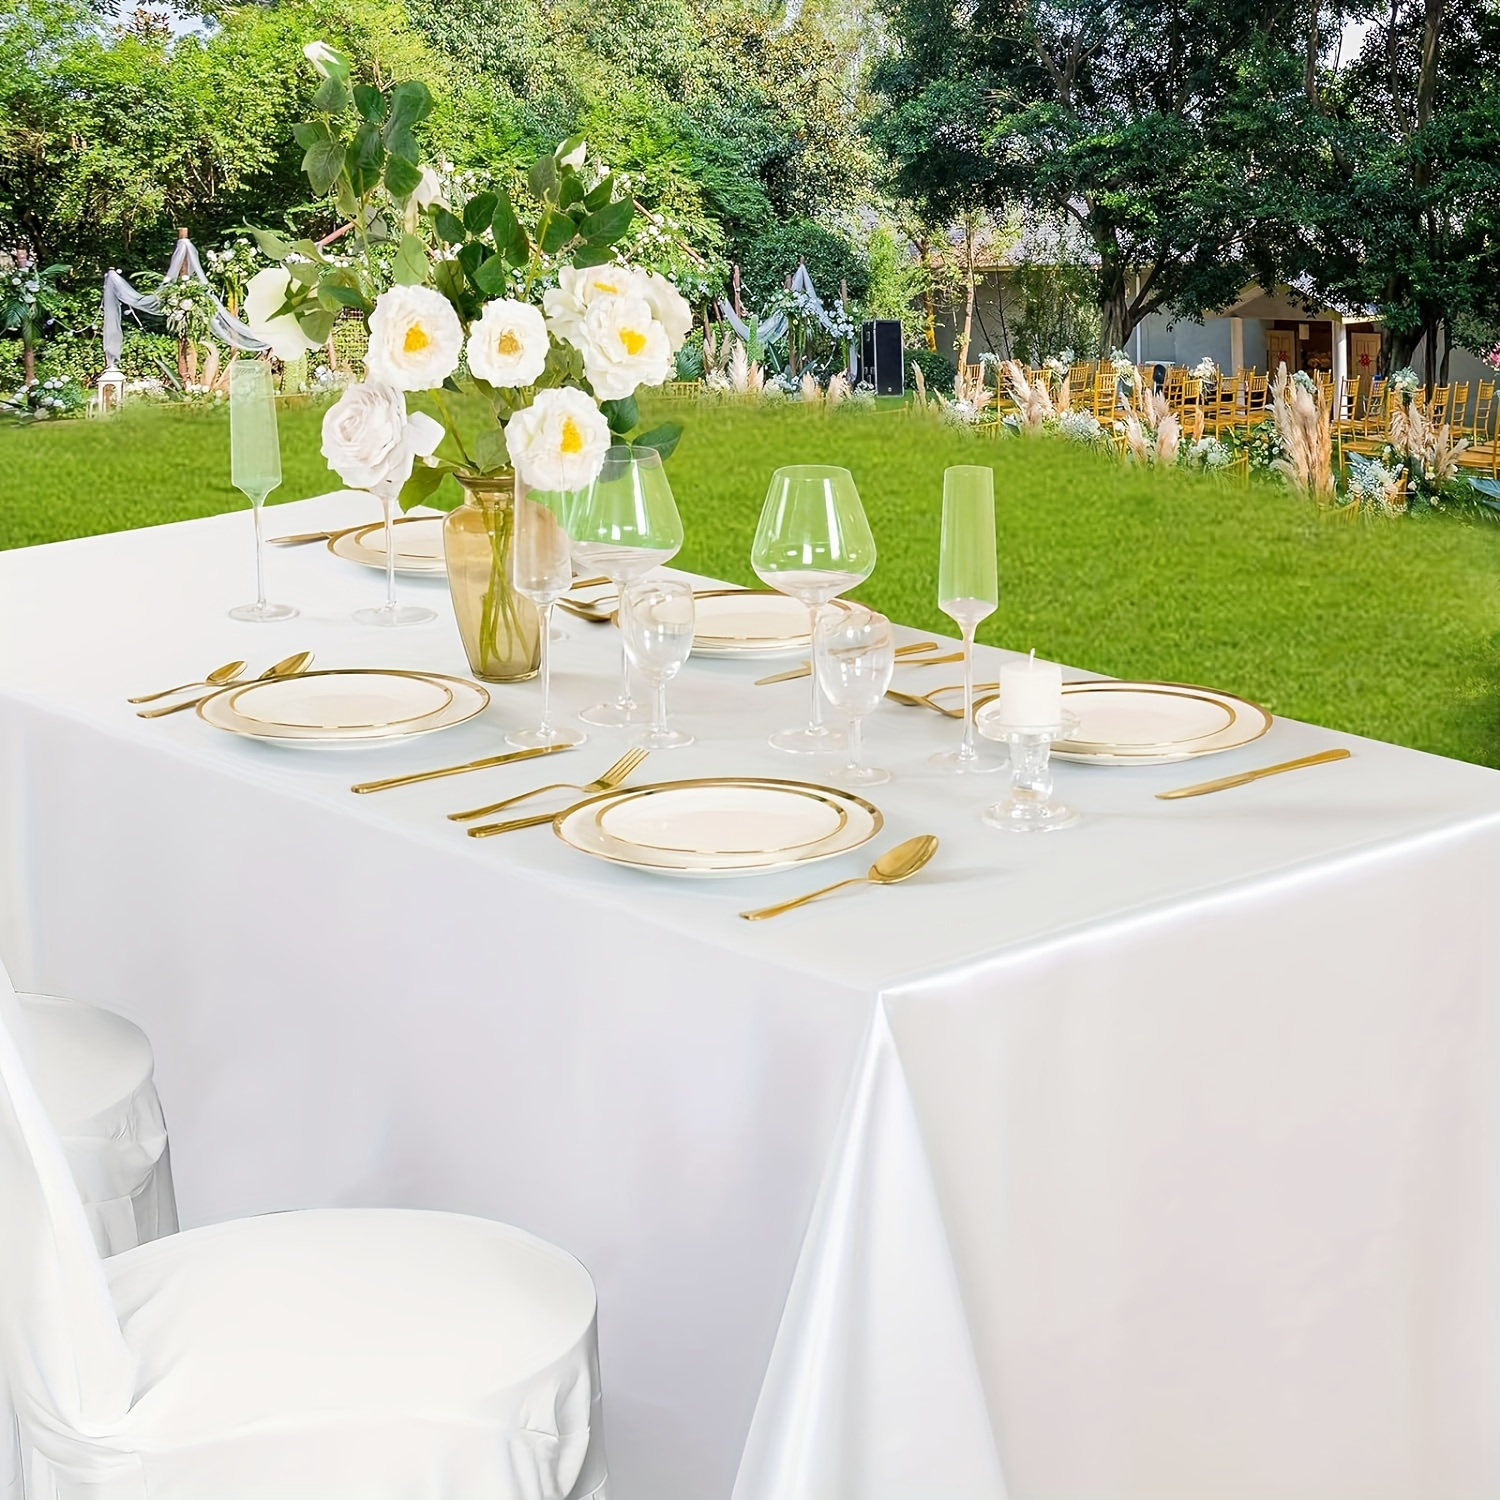 Manteles rectangulares blancos de 60 x 84 pulgadas, mantel rectangular de 6  pies, mantel de mesa de tela para fiestas, ideal para recepciones de boda